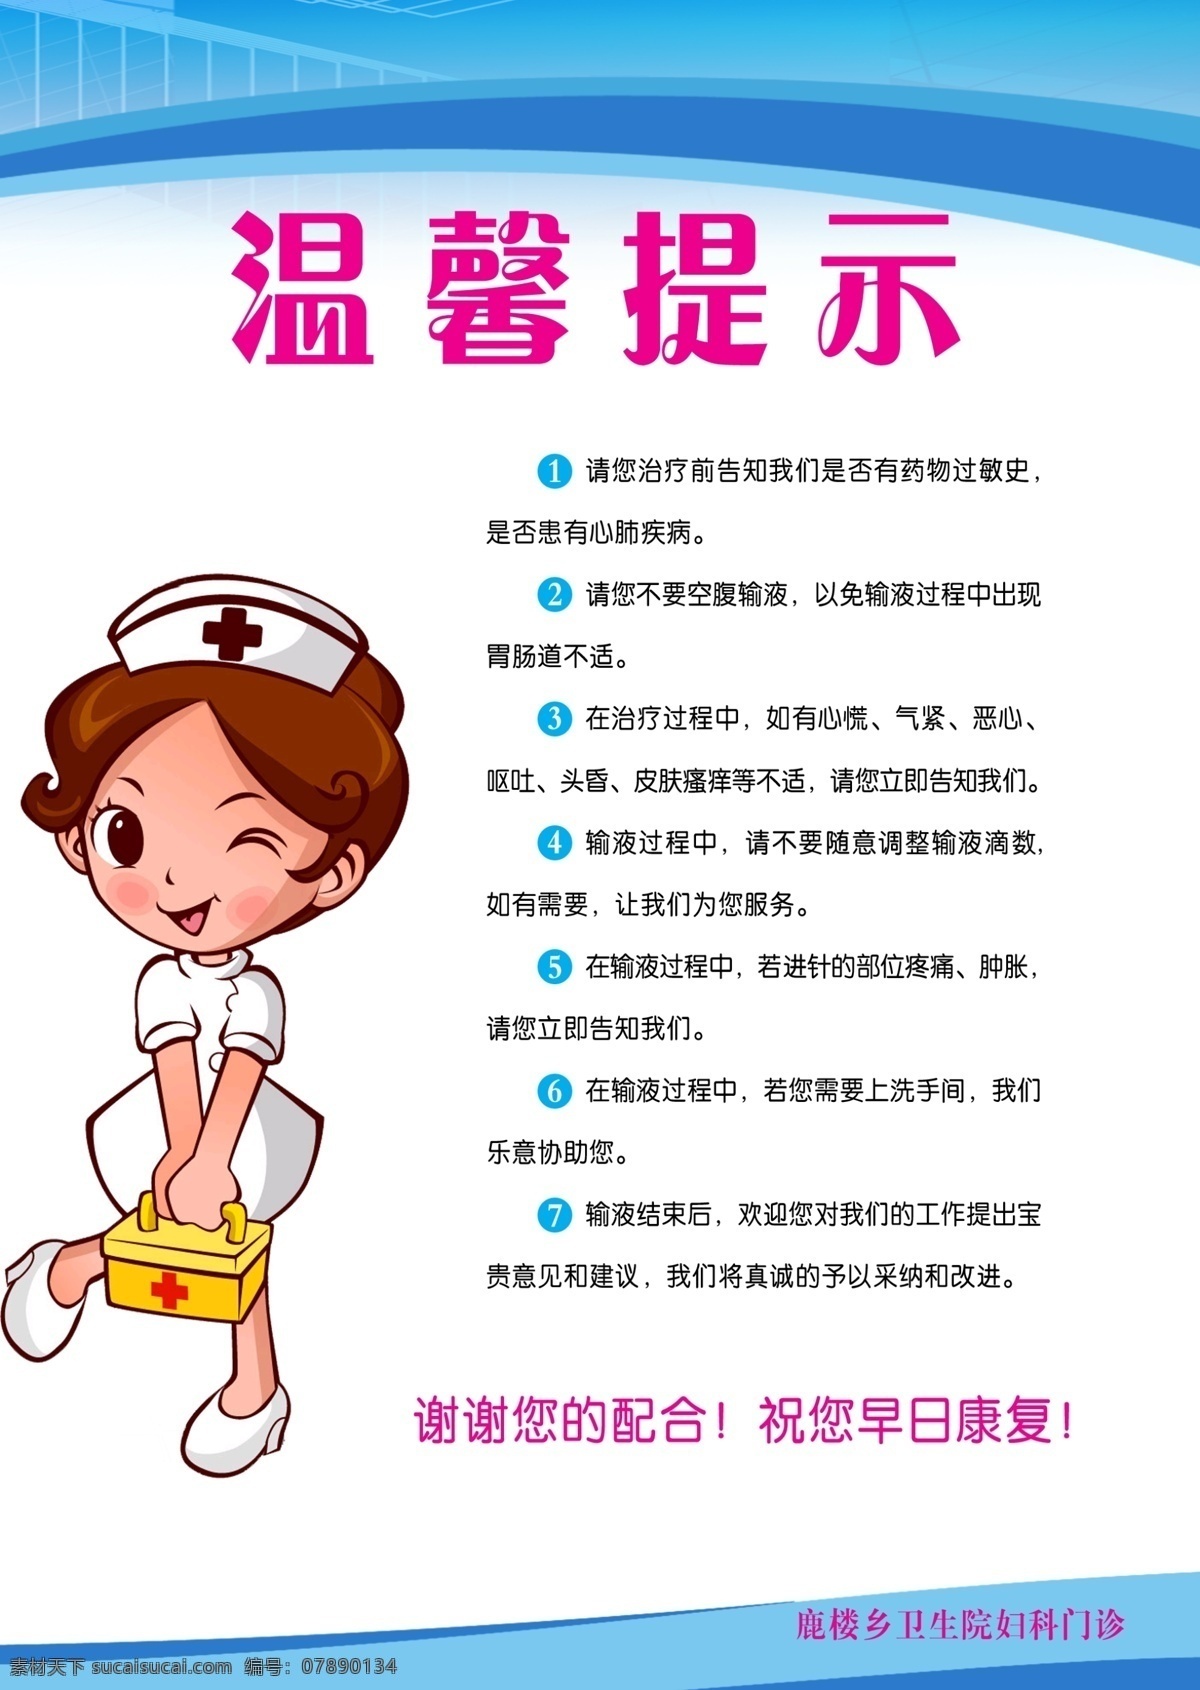 医院妇科展板 医院制度 妇科制度 温馨提示 广告设计模板 源文件